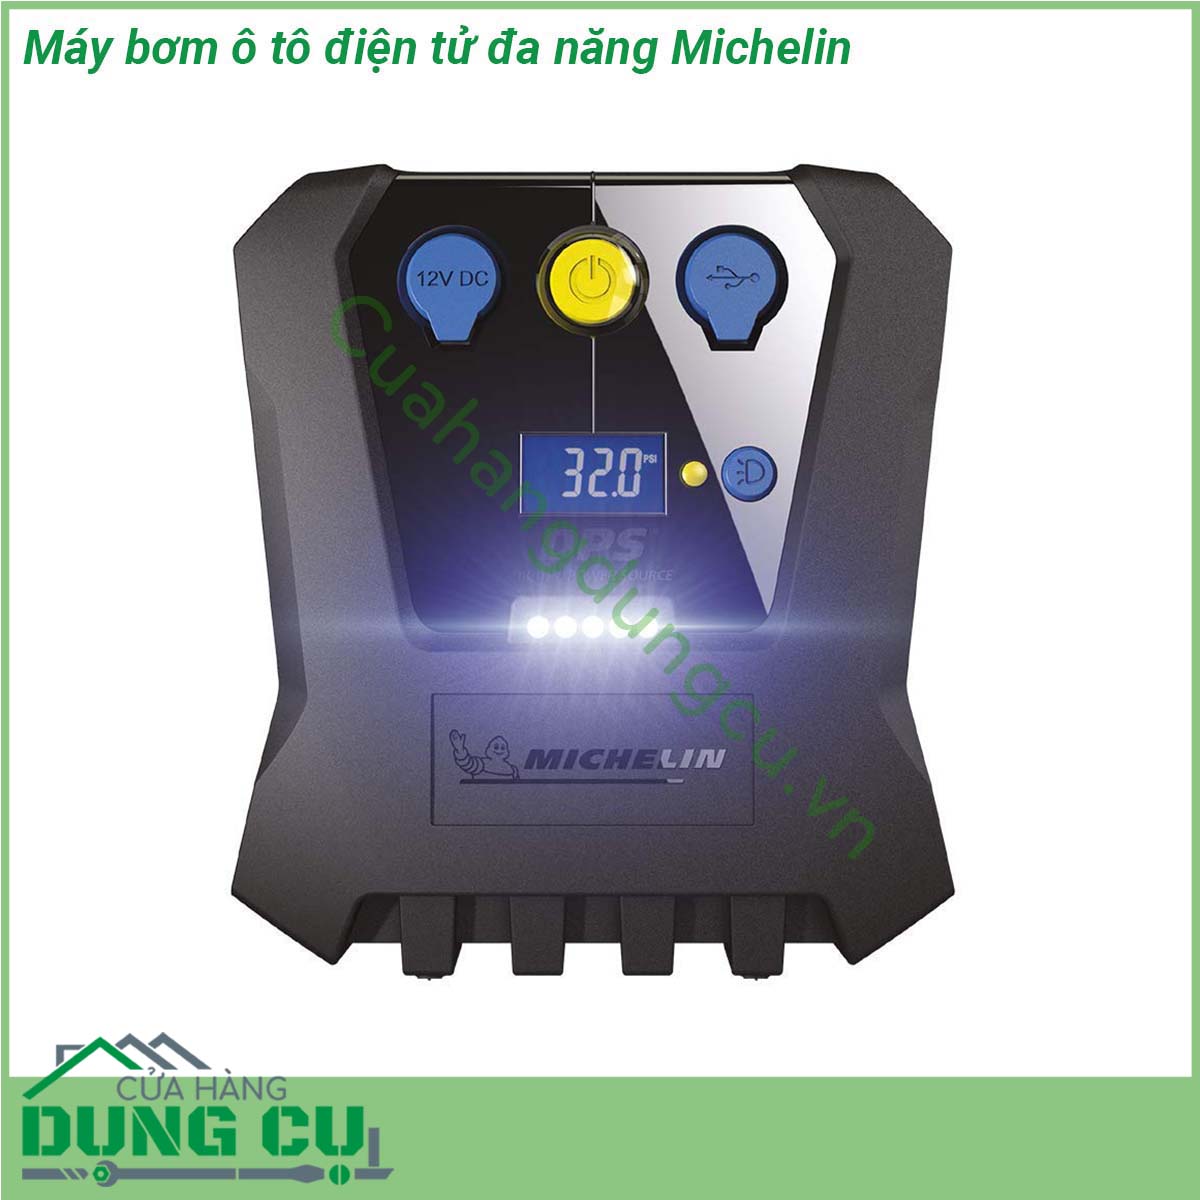 Máy bơm lốp ô tô điện tử đa năng Michelin được thiết kế với toàn bộ thân vỏ của máy được làm từ nhựa chịu lực chắc chắn cứng cáp Chất liệu nhựa nhám tinh tế đem lại cảm giác hiện đại mạnh mẽ giúp người sử dụng cảm thấy chắc chắn và hạn chế tình trạng xước khi sử dụng